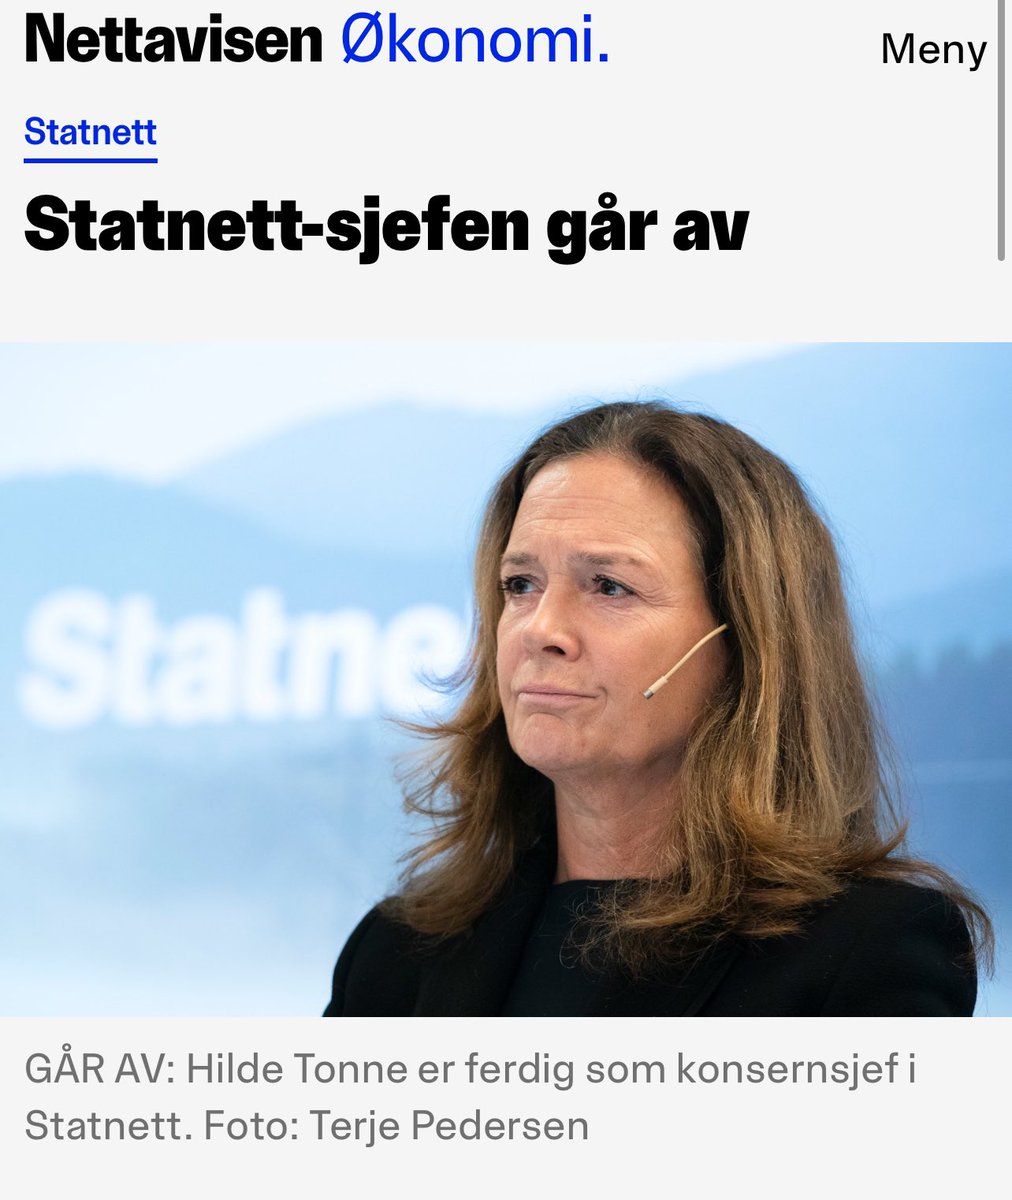 Når hun sier «stor omstilling av selskapet» er det fra en teknologibedrift medlem i Abelia til en politisk aktør medlem av Fornybar Norge hun mener?